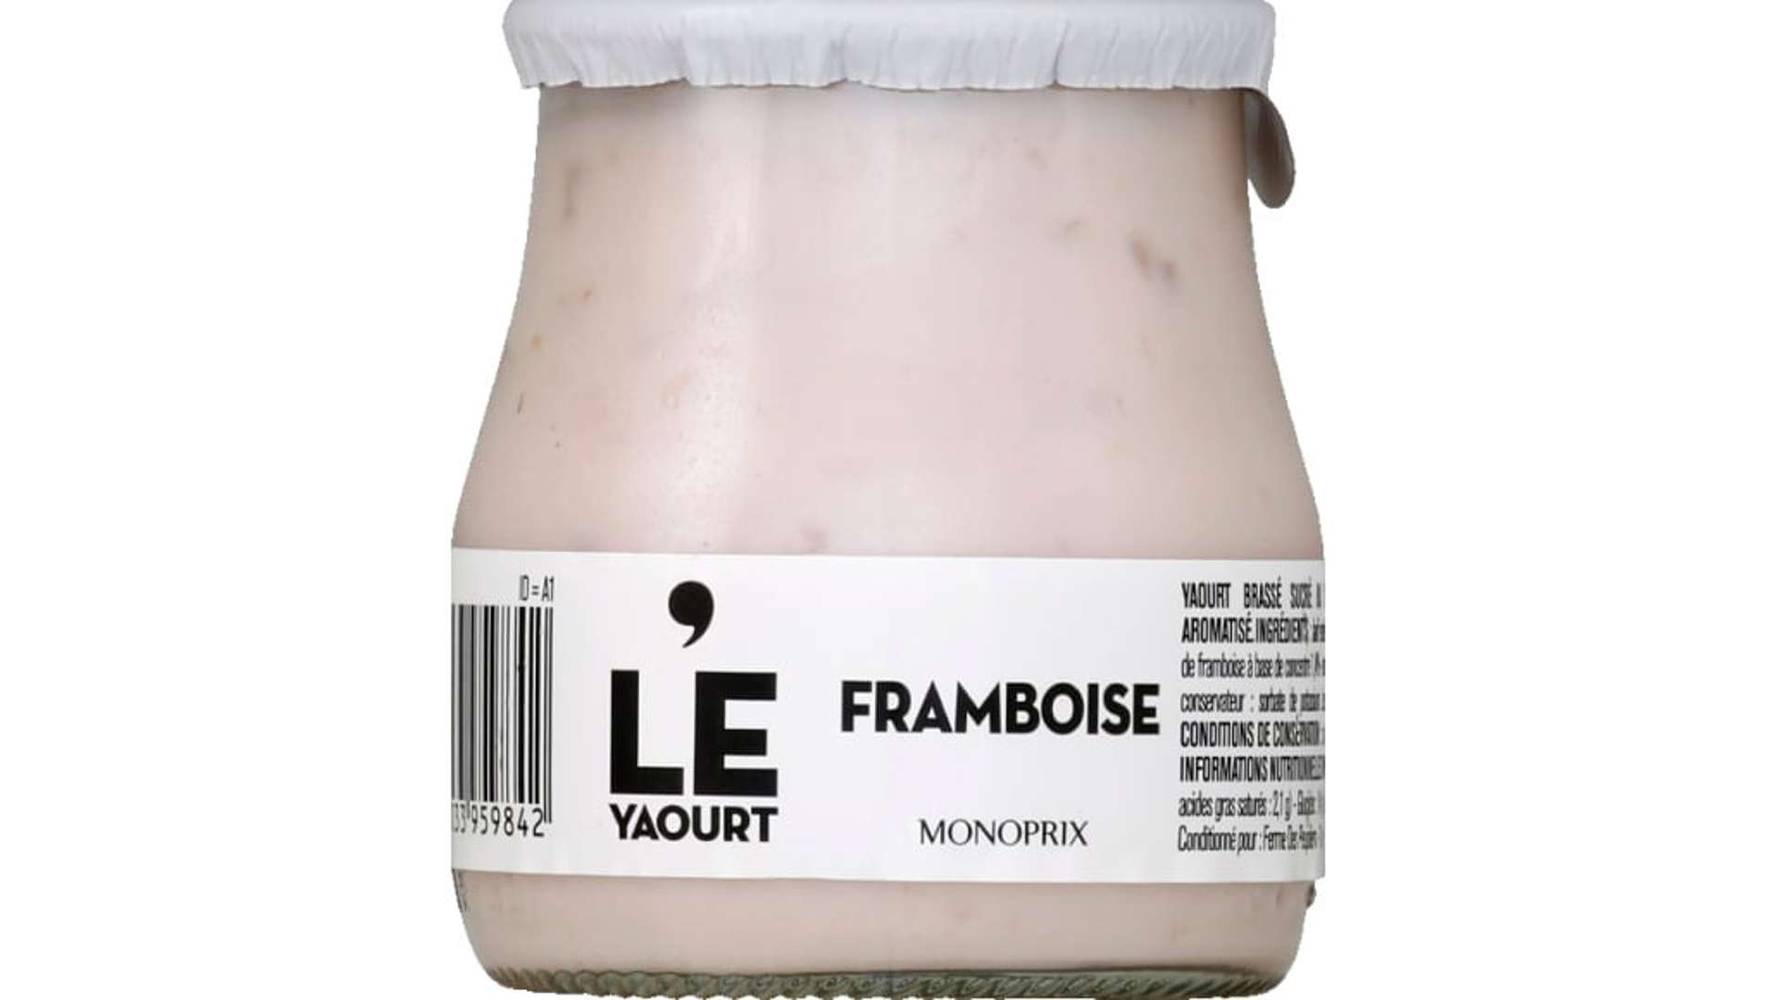 Monoprix - Le yaourt (framboise)